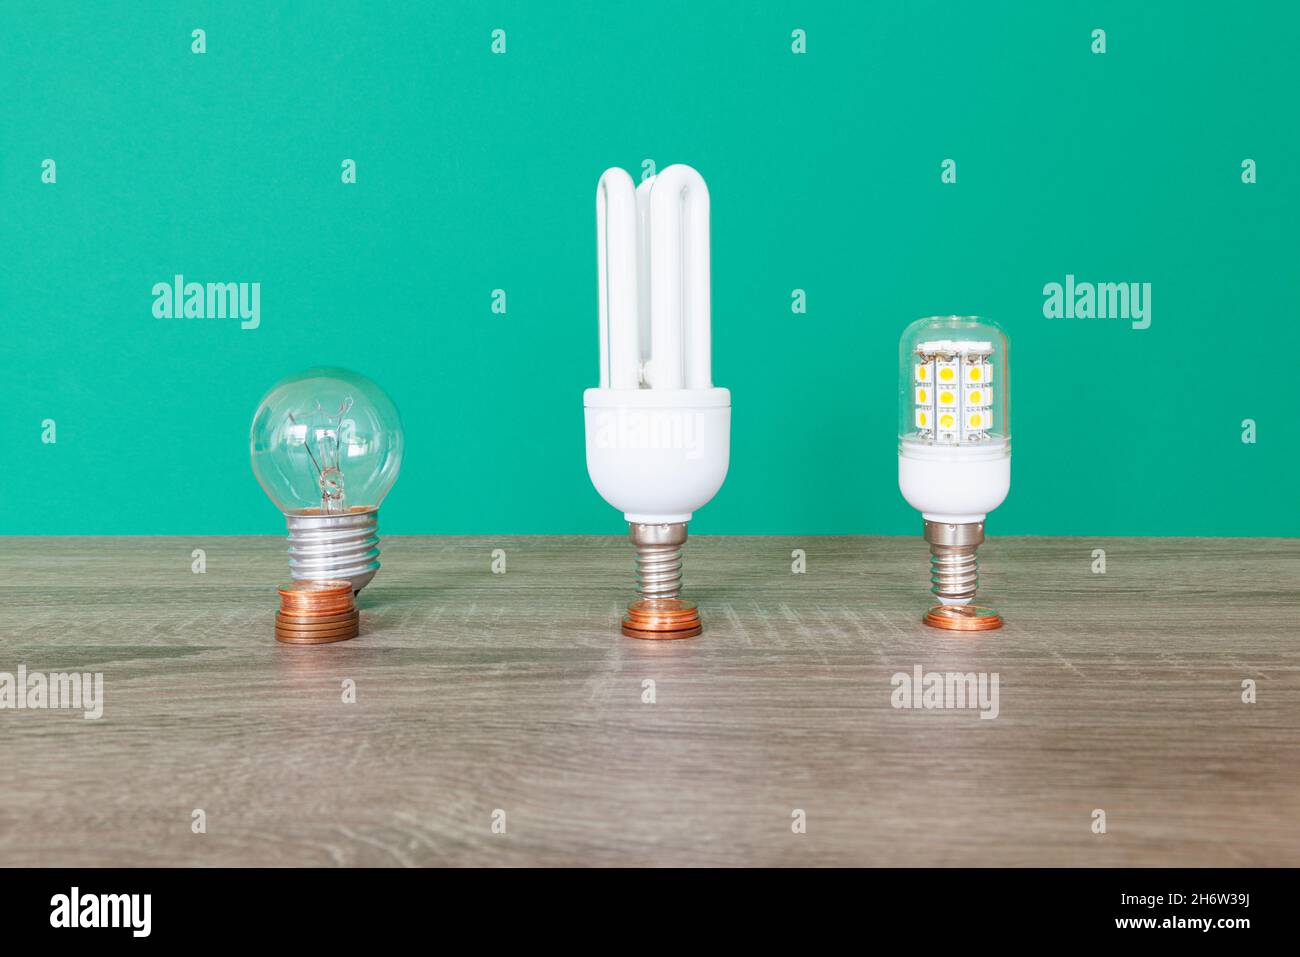 Drei Glühlampen, ein Wolframfaden, eine Energiesparlampe und eine LED-Glühlampe. Vor ihnen liegen Stapel von Münzen nach dem Preis ihrer Stockfoto